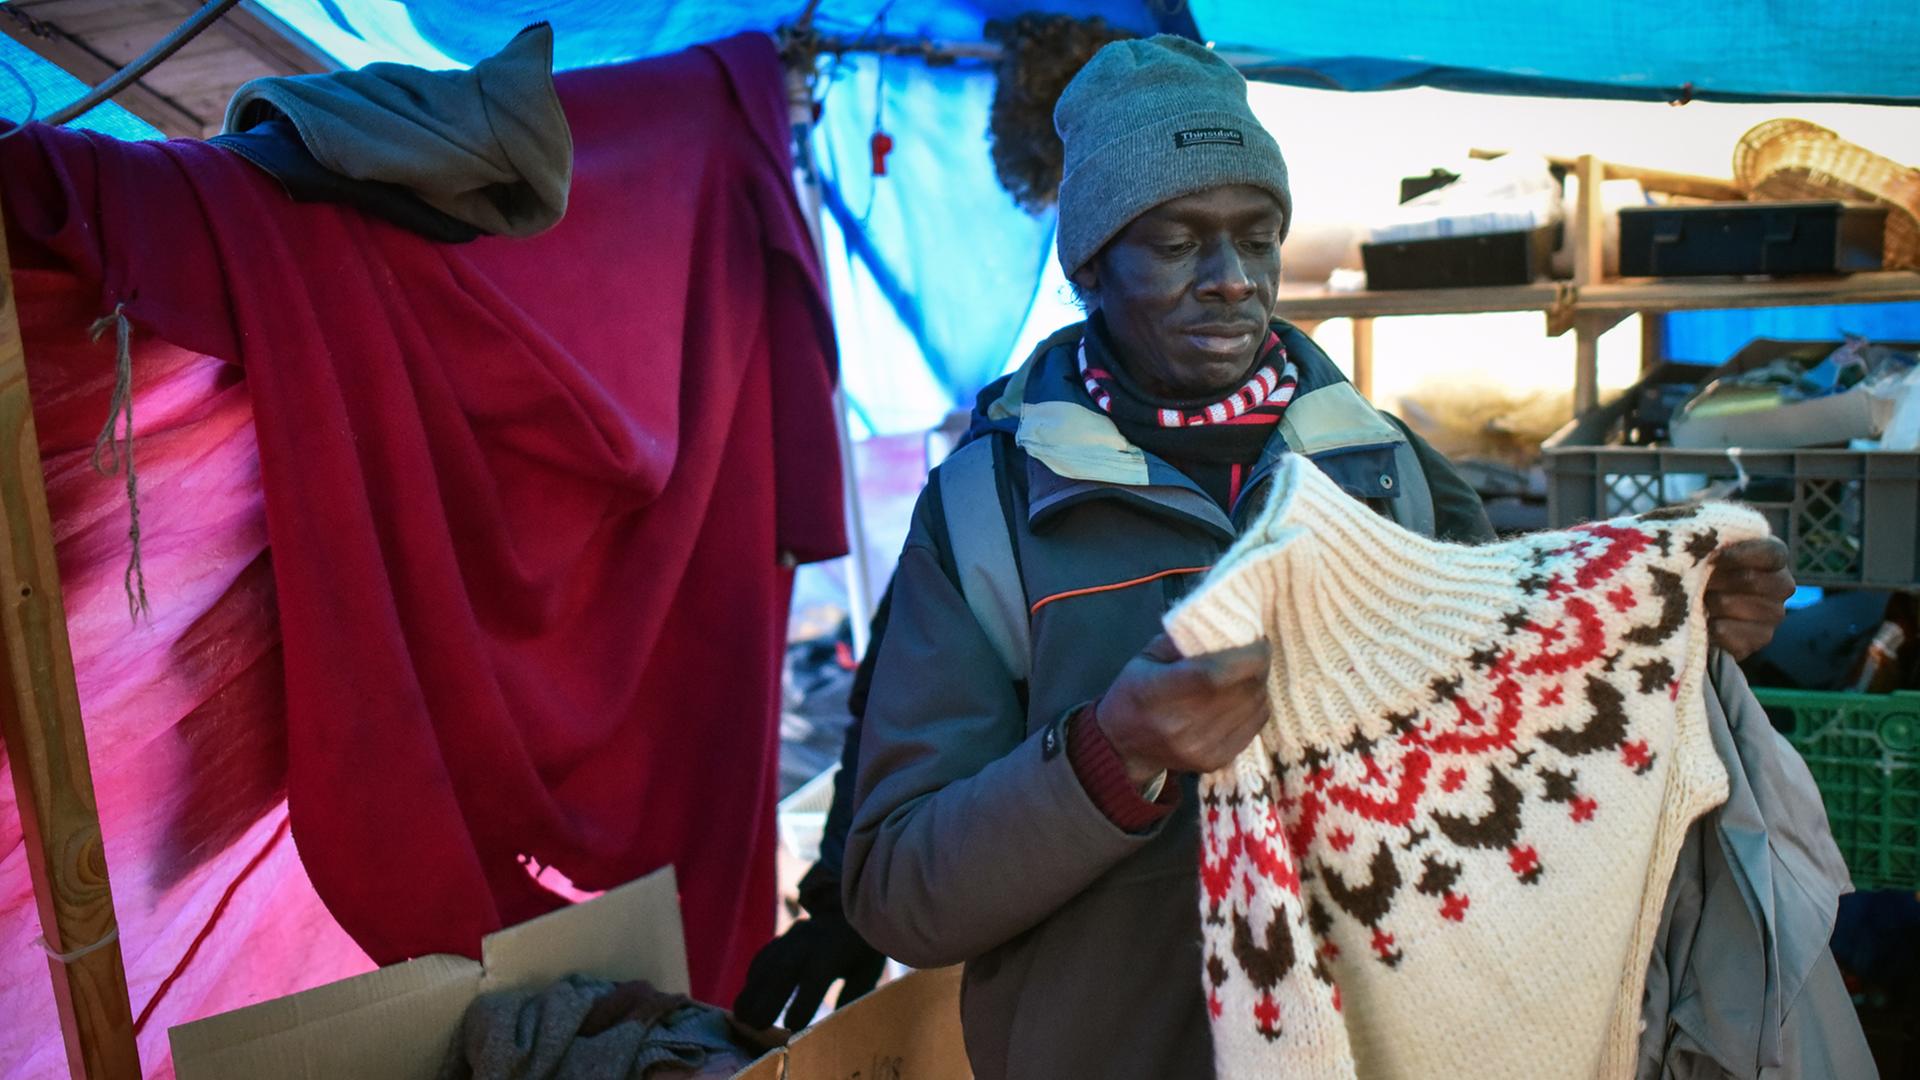 Ein Flüchtling begutachtet am 11.12.2014 in Hannover Winterkleidung in einem Zelt eines provisorischen Flüchtlingscamps.